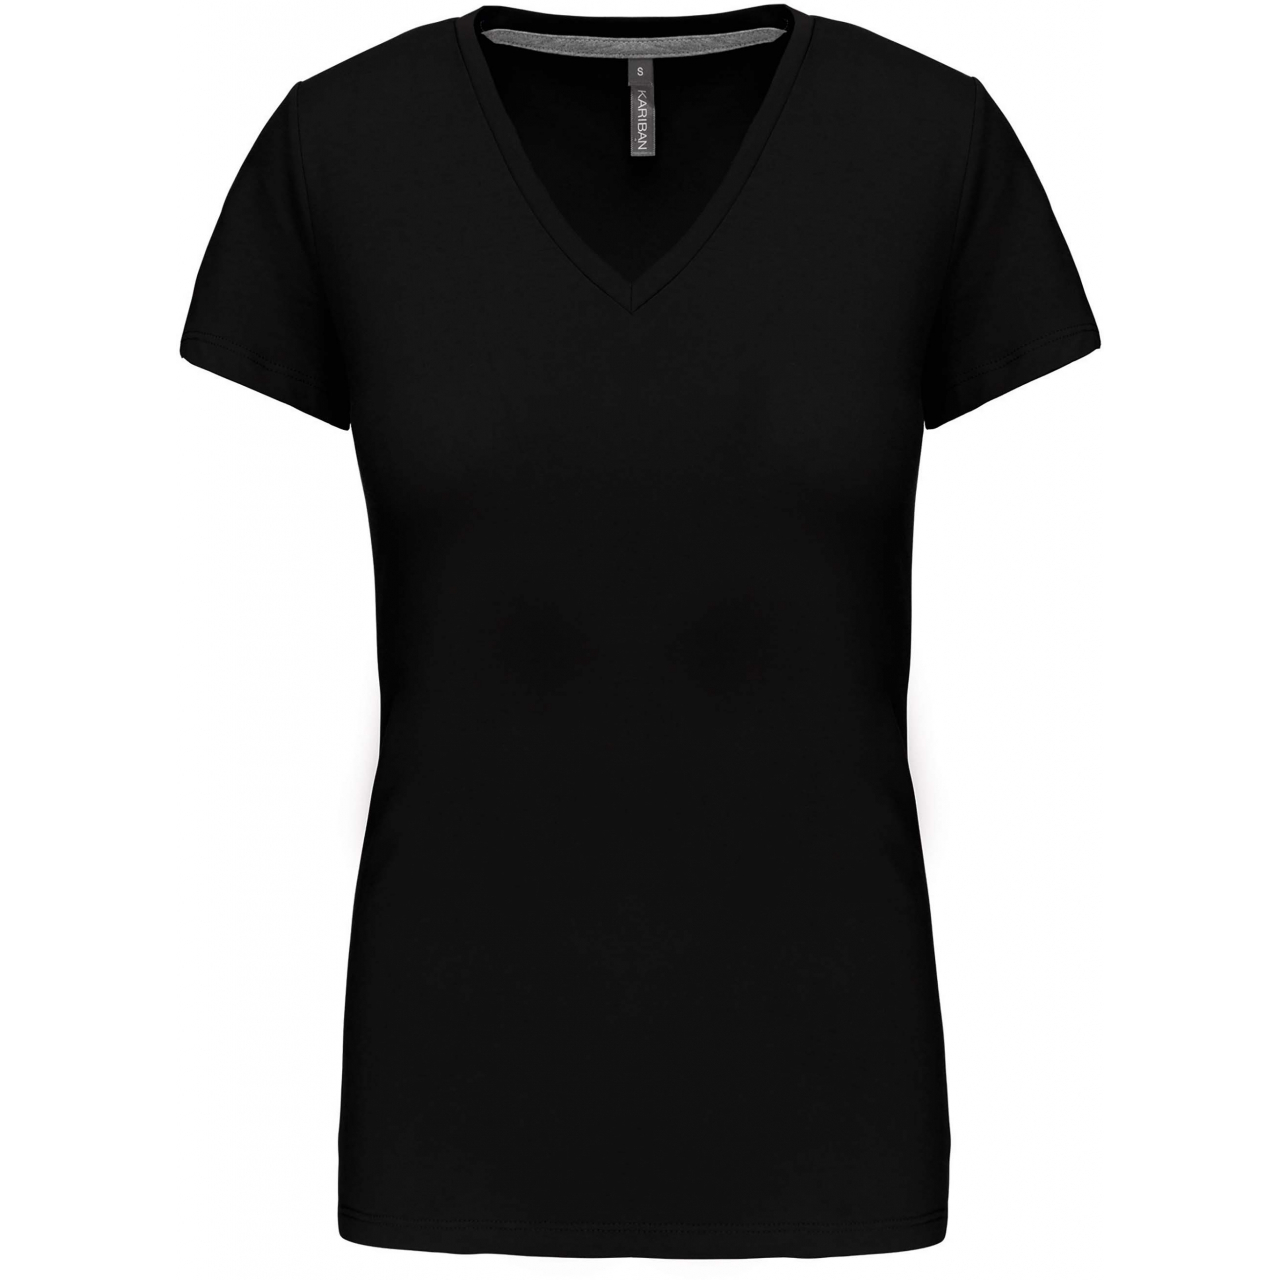 Dámské tričko Kariban V-neck s krátkým rukávem - černé, M